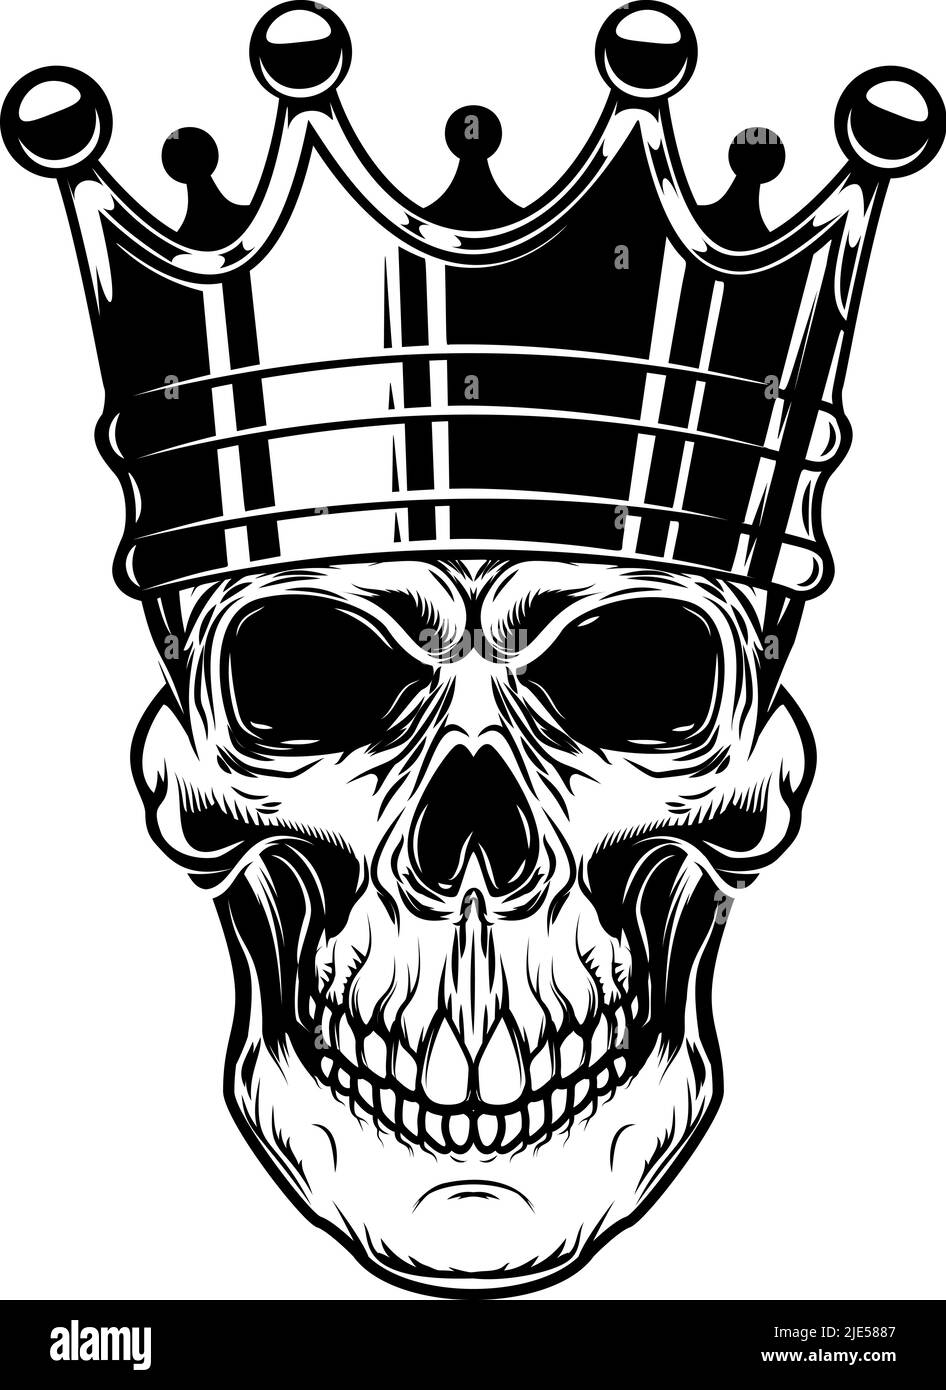 Skull with king crown. Design element for logo, label, sign, emblem ...